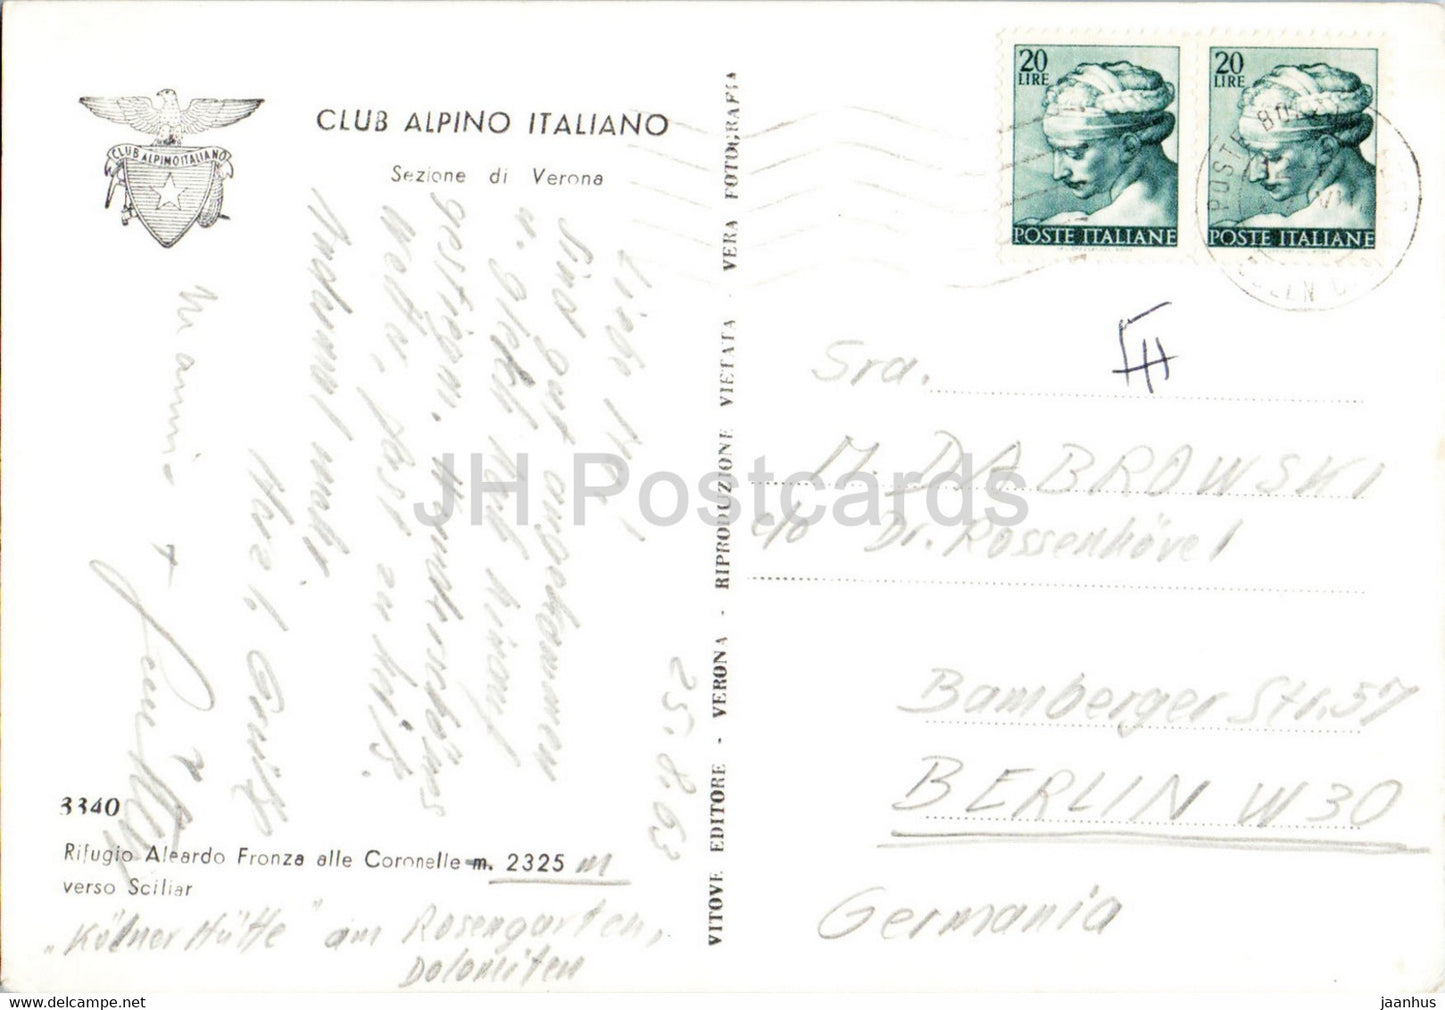 Rifugio Aleardo Fronza alle Coronelle verso Sciliar – Club Alpino Italiano – 1963 – Italien – gebraucht